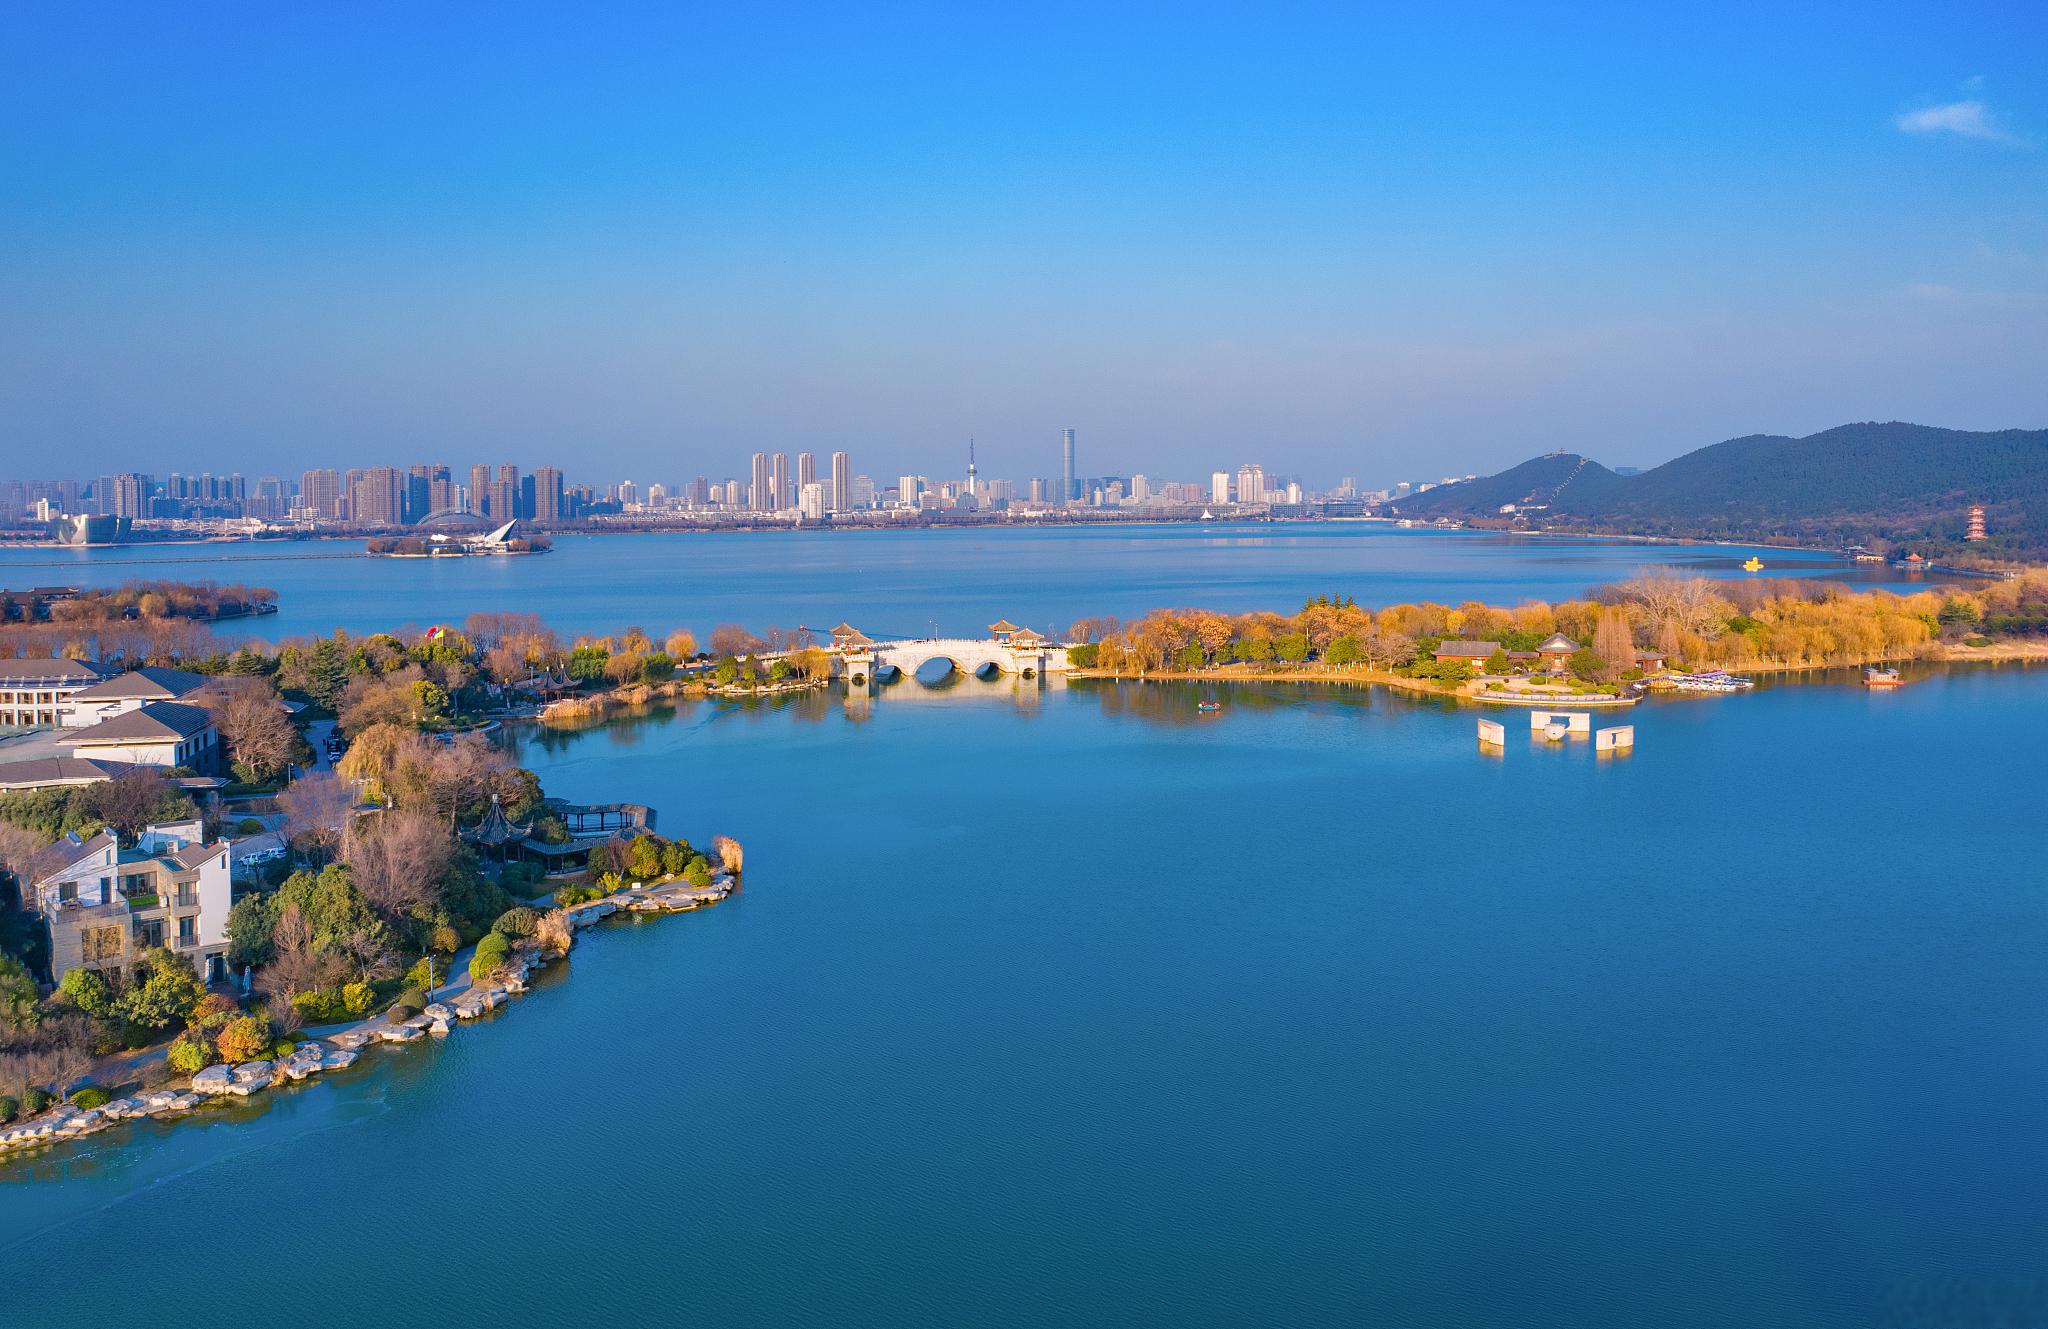 徐州云龙湖景区 江苏省徐州市云龙湖景区,位于徐州市中心,以其壮美的